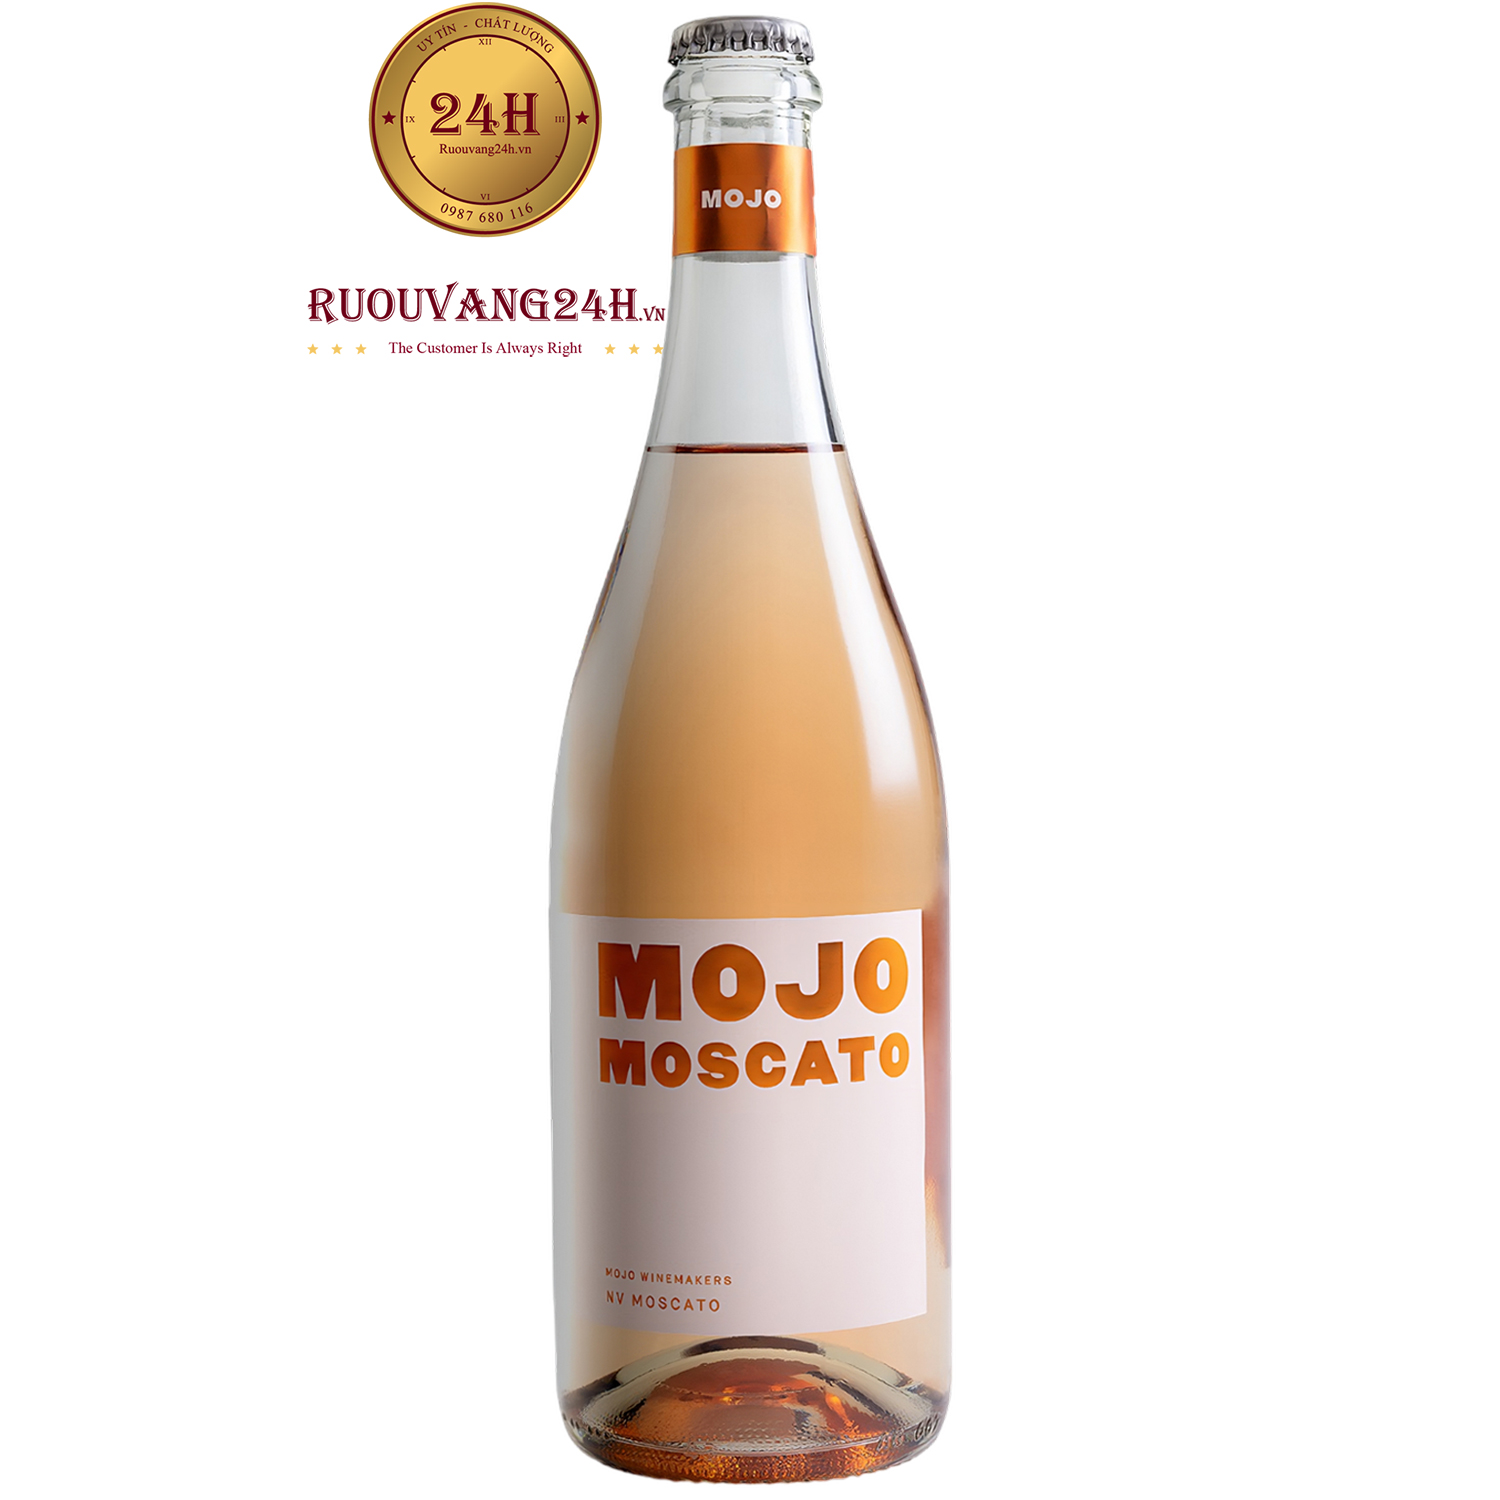 Rượu Vang Mojo Moscato